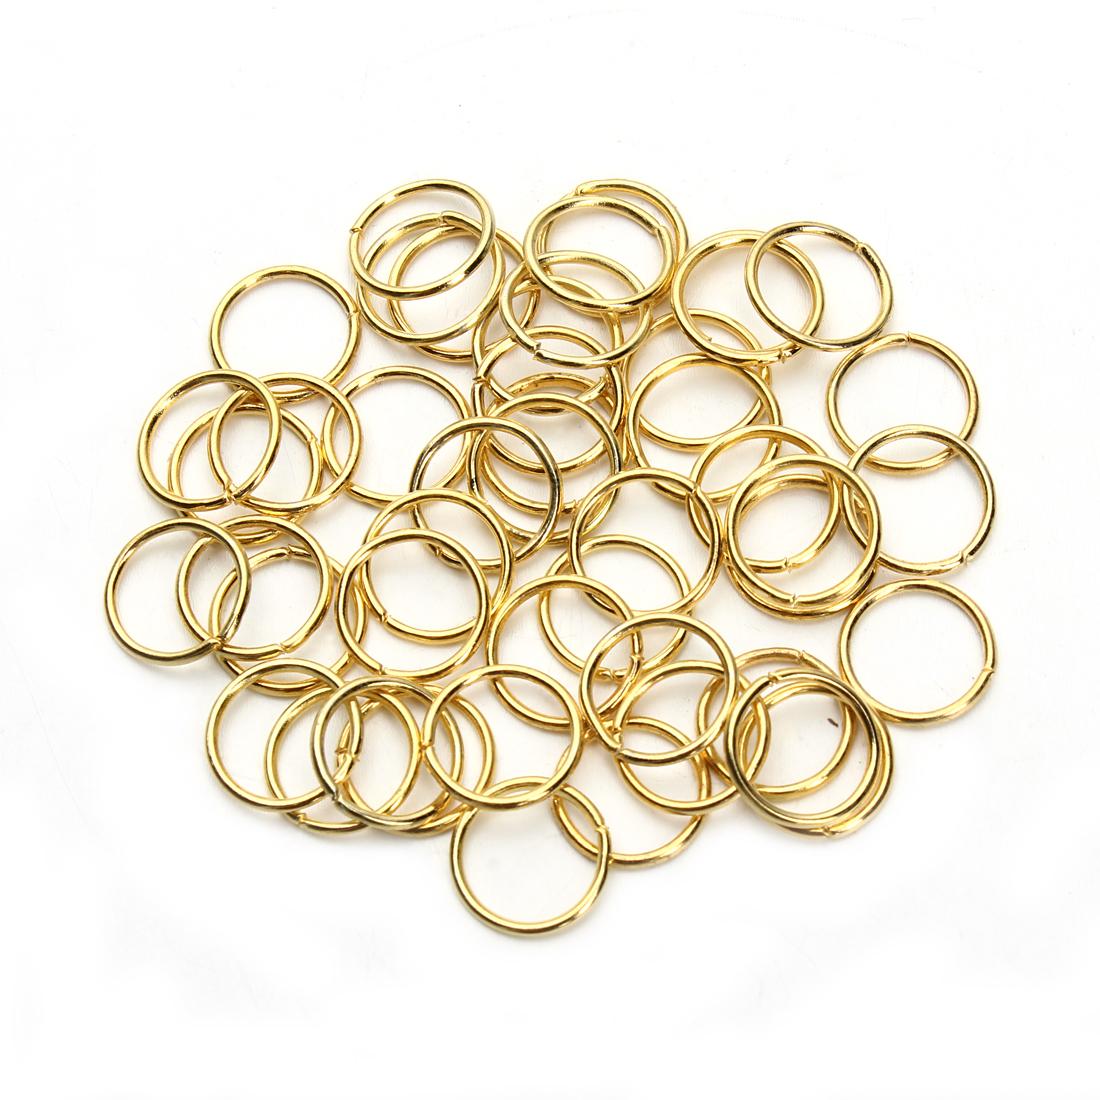 Изображение товара: DC 3 4 5 6 7 8 9 10 мм металлические кольца для прыжков серебро/золото/бронза в коробке цветные сплит-кольца Разъемы для самостоятельного изготовления ювелирных изделий